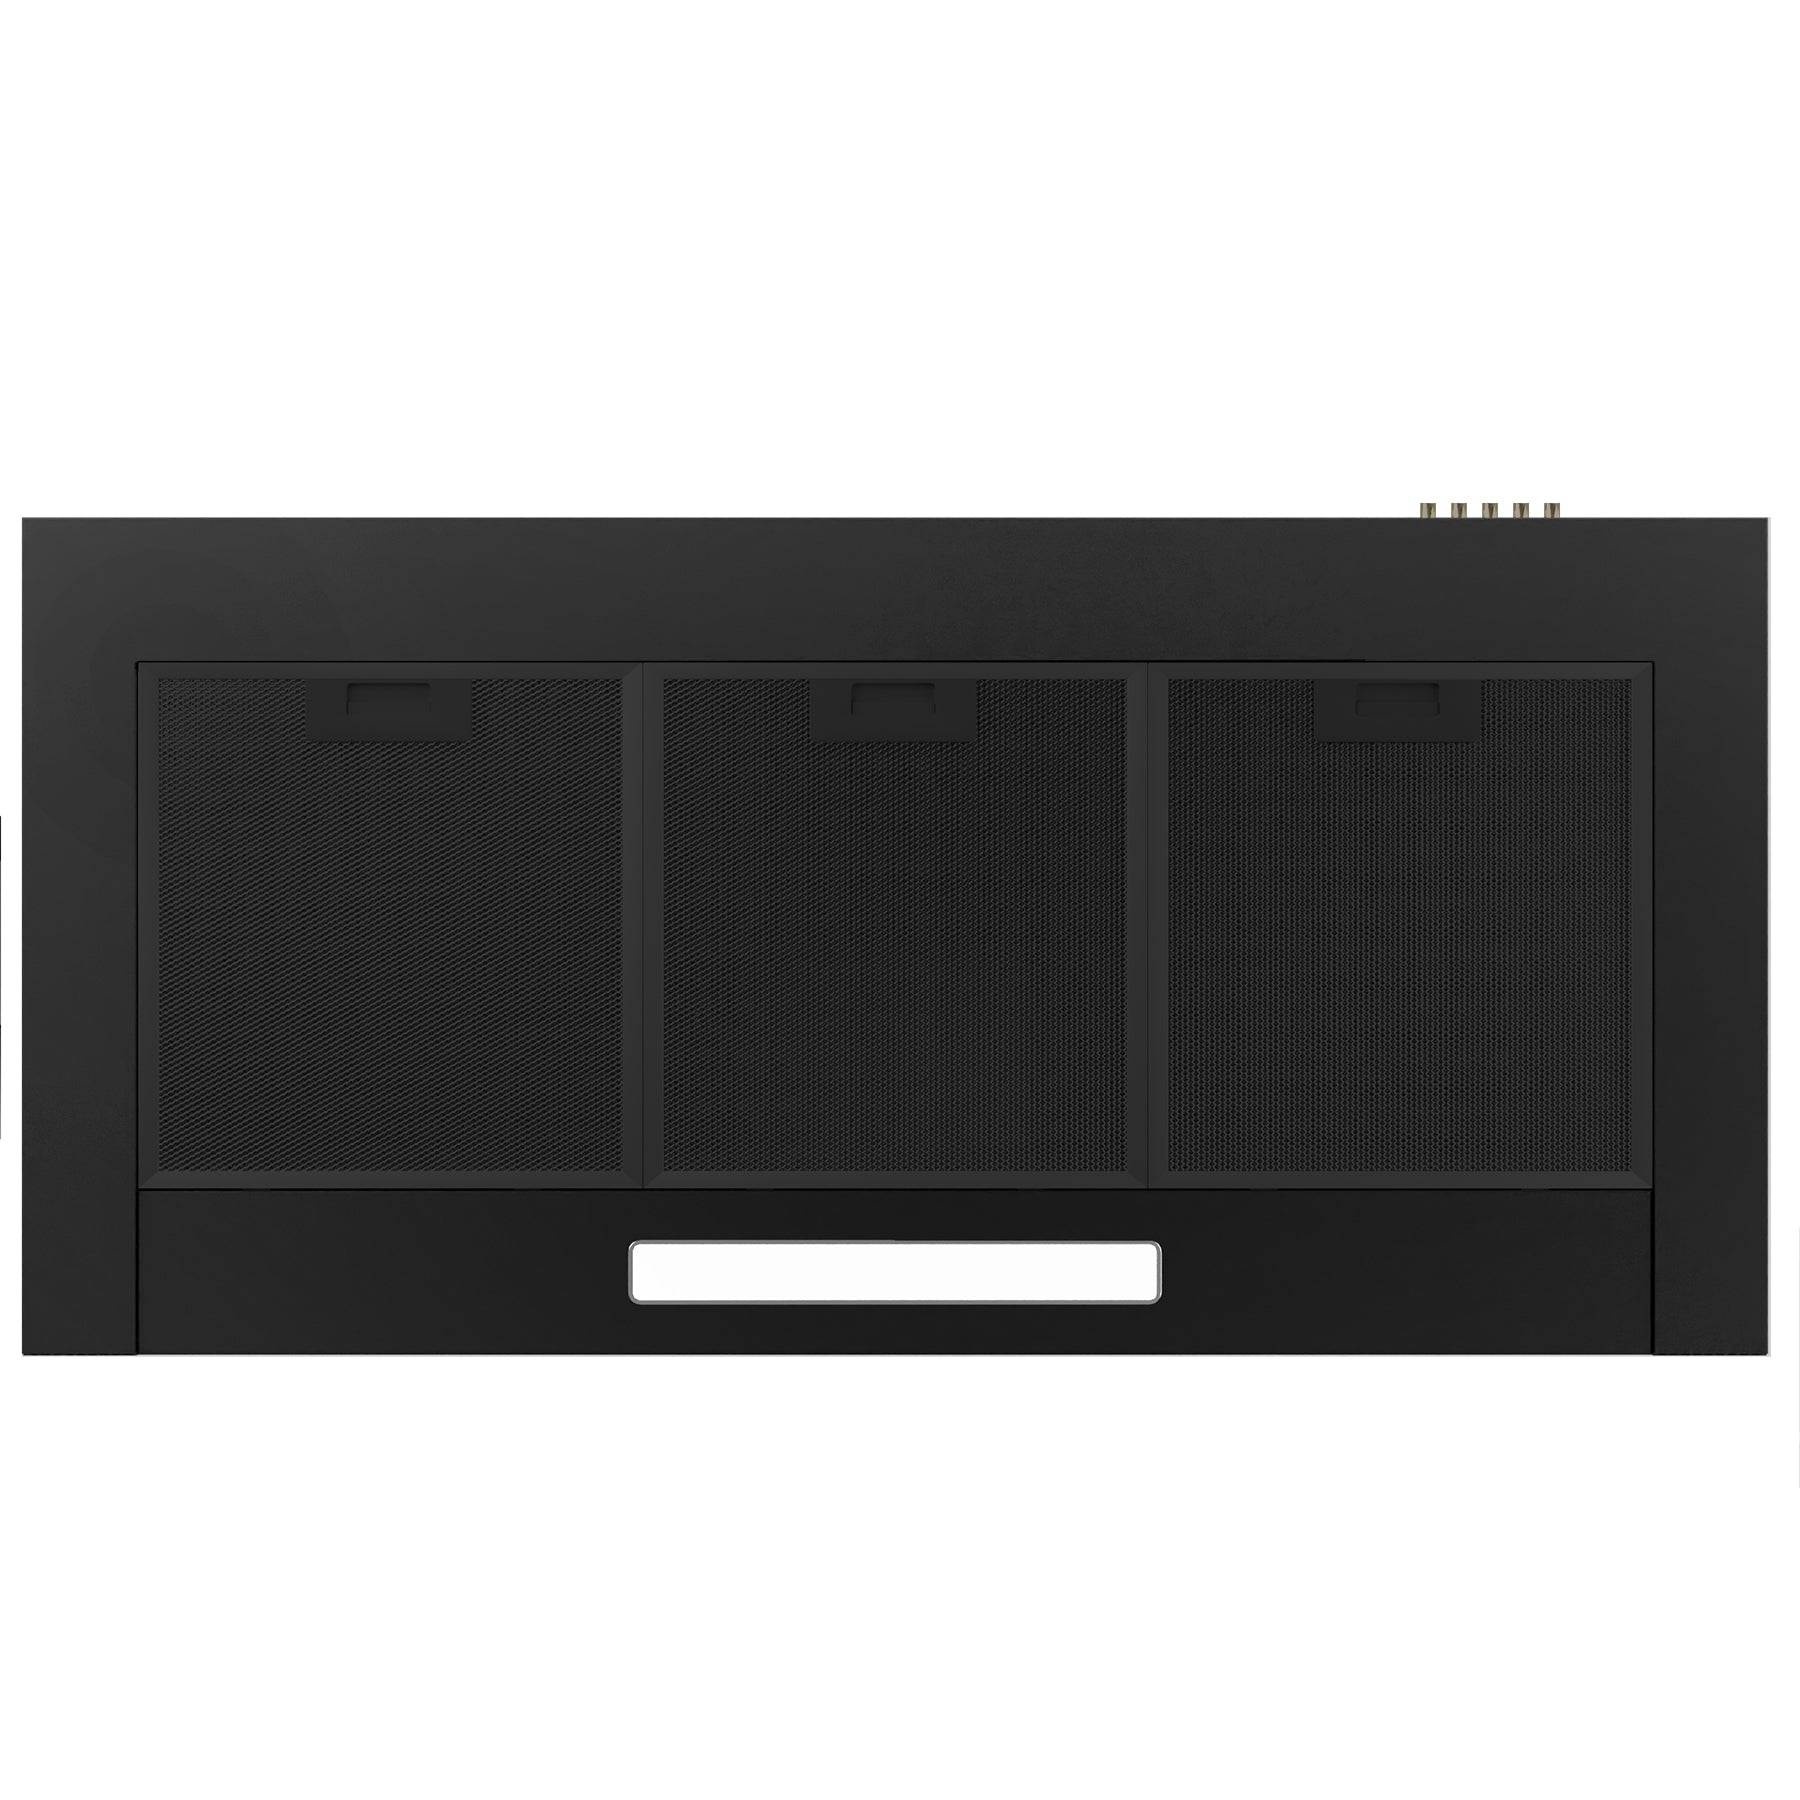 Ciarra 90cm Cappa a parete in nero CBCB9201-B – CIARRA Appliances